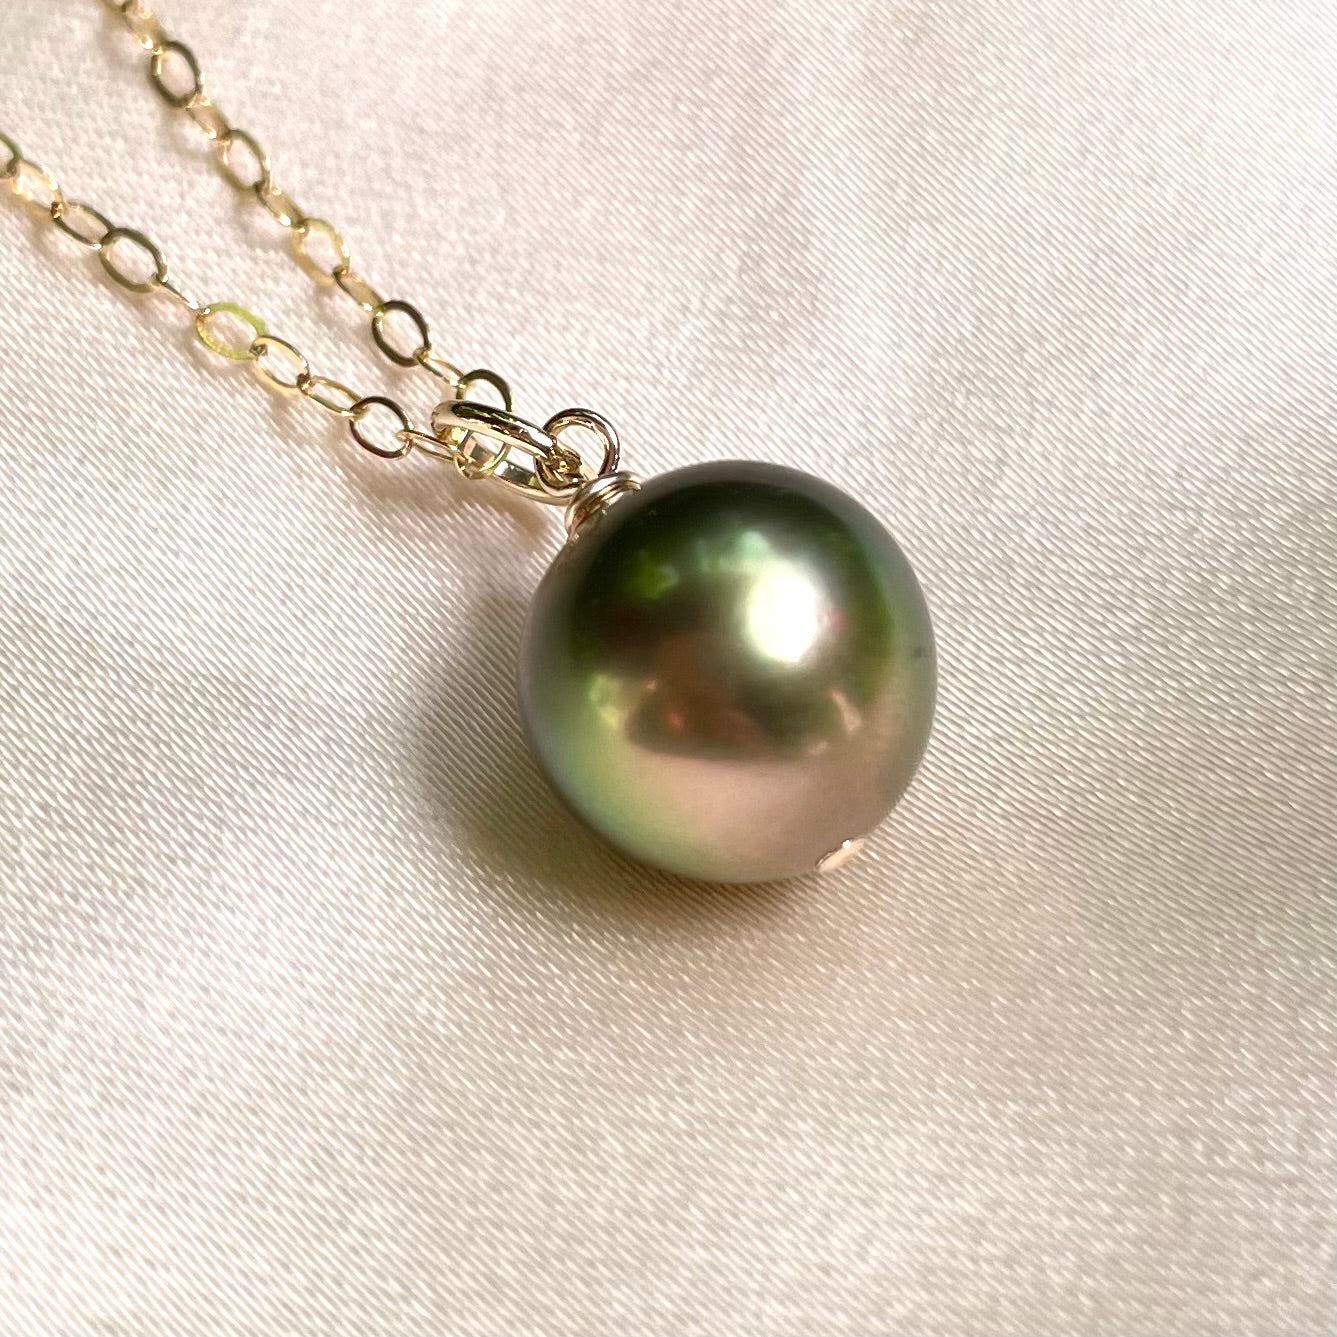 Metallic Green Tahitian Pearl Necklace